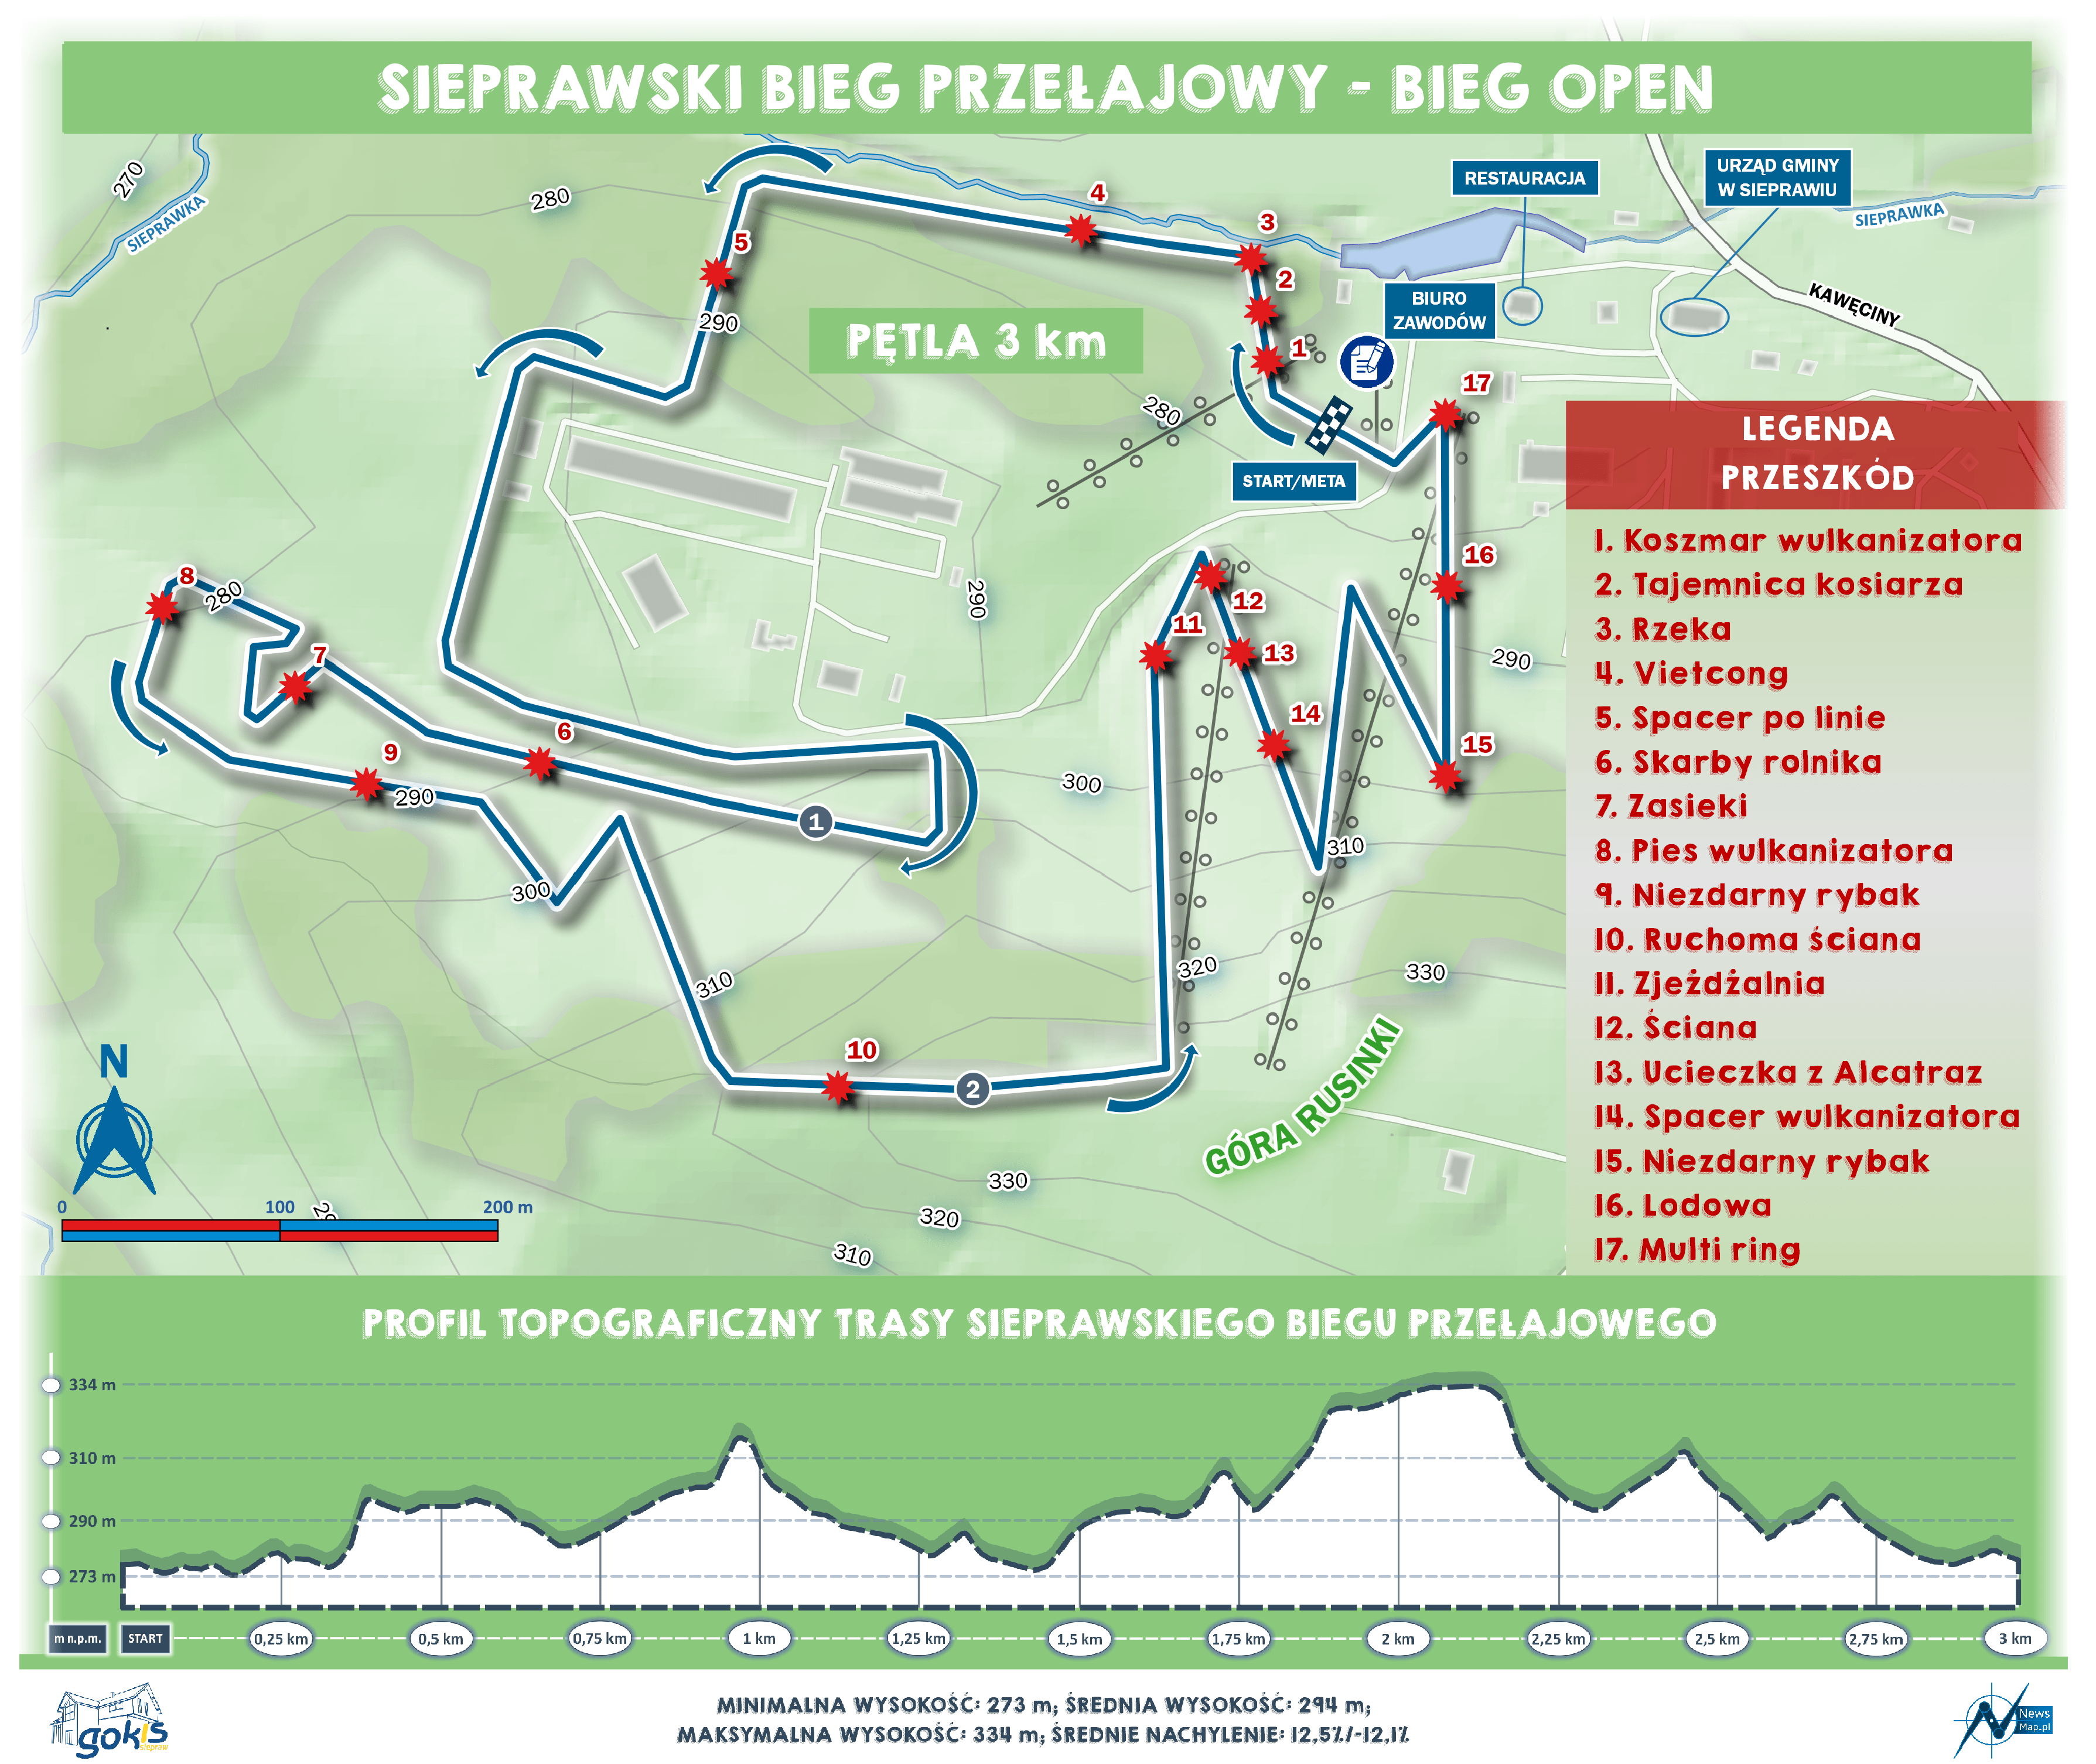 Sierpawski Bieg Przejałowy 2019 - mapa statyczna on-line v2